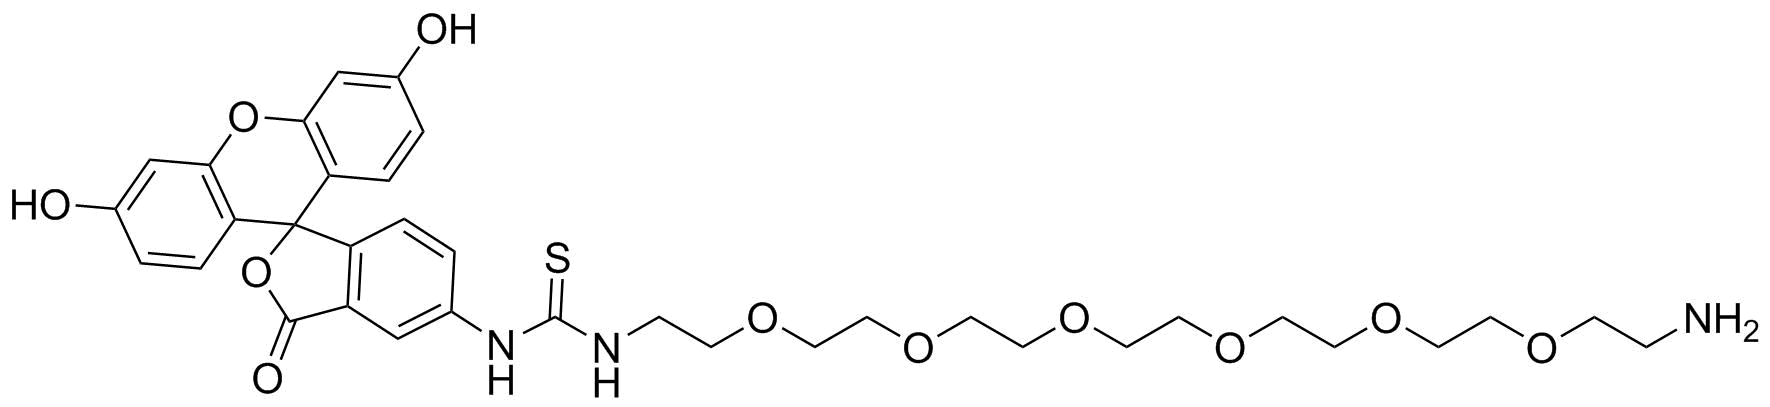 Fluorescein-PEG6-Amine